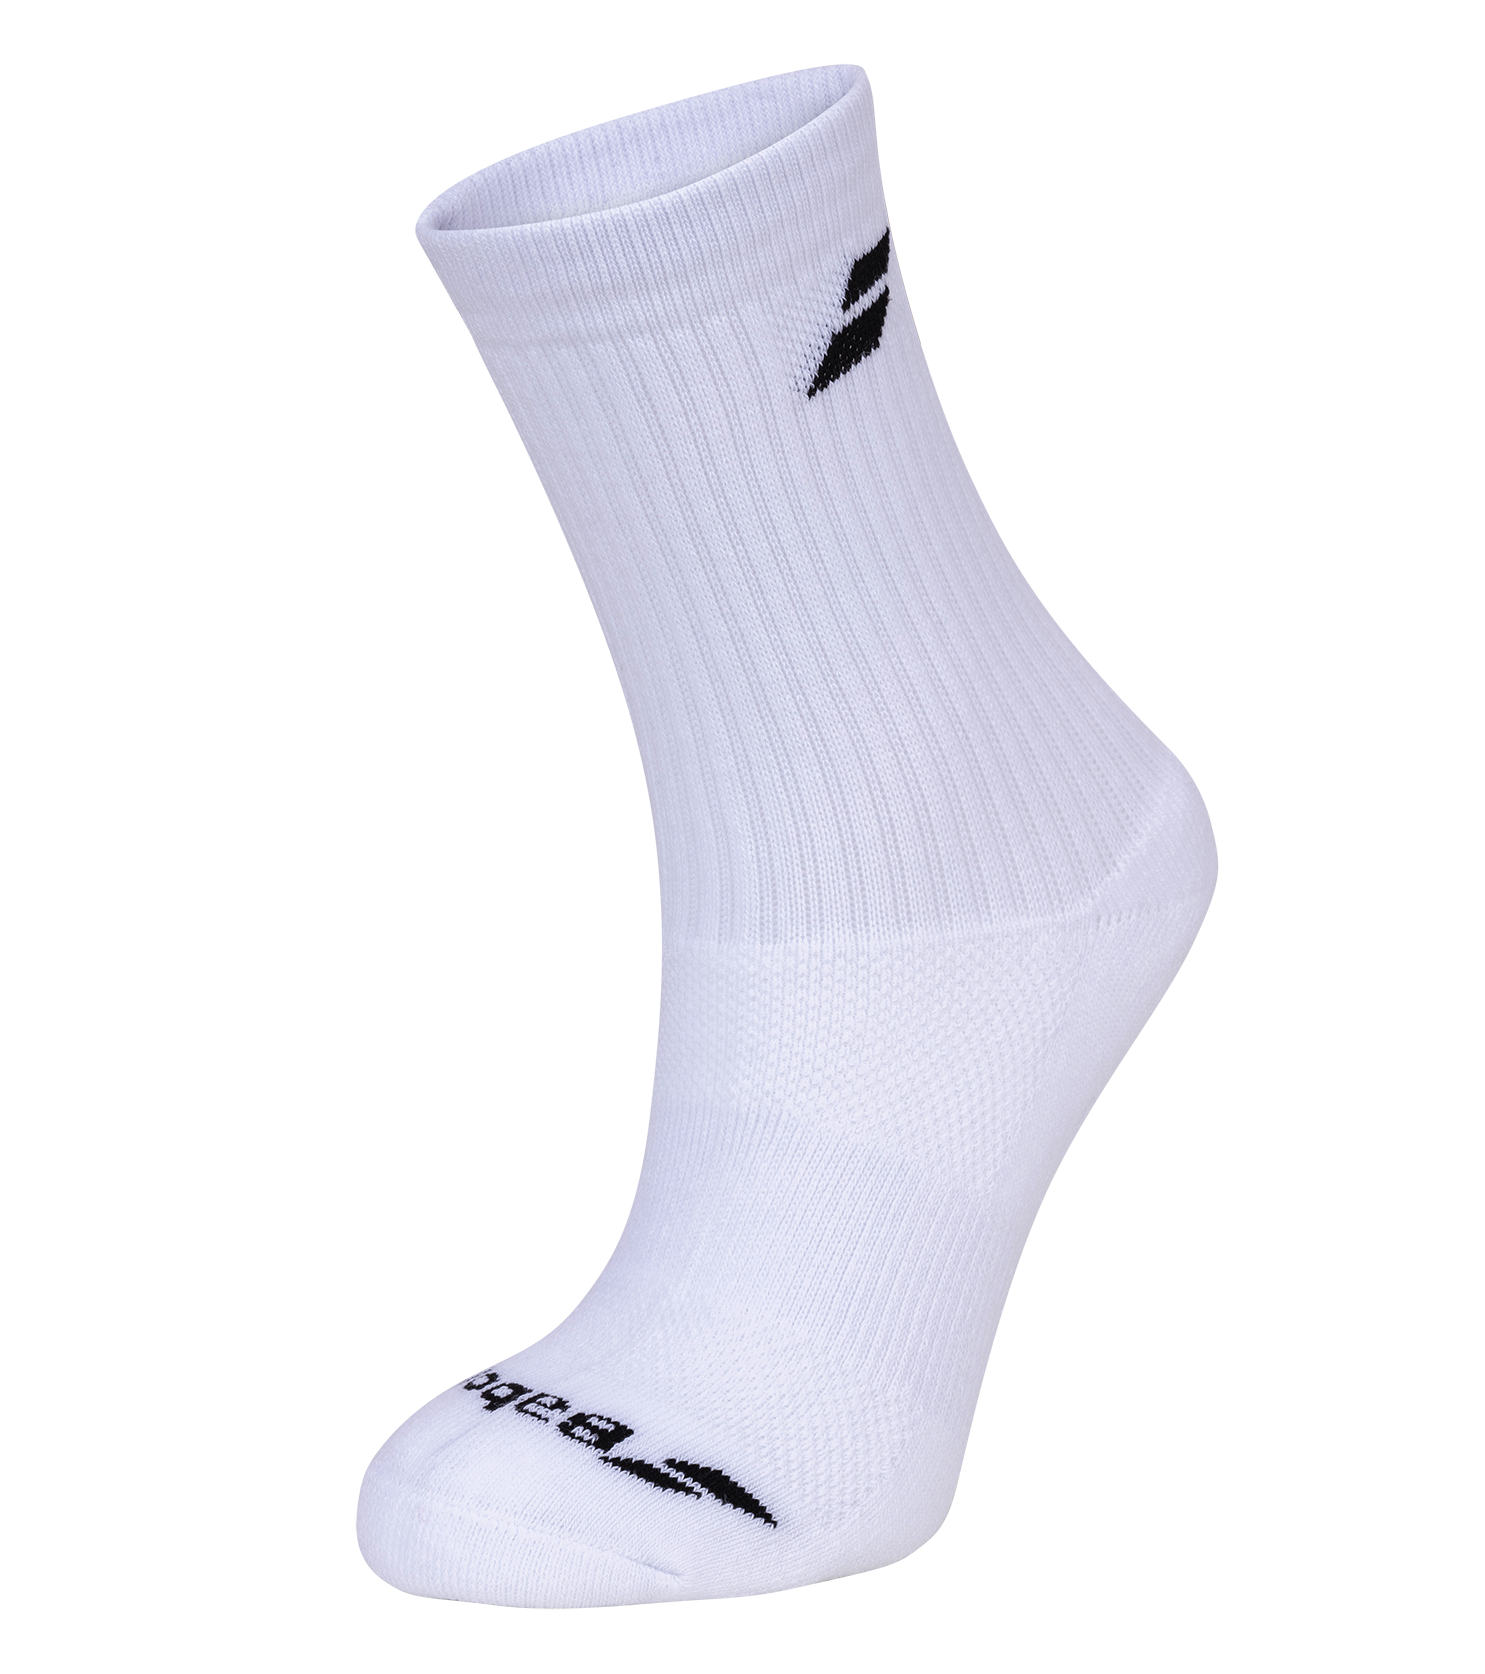 Babolat Long Badminton Socks - White 3 Pack